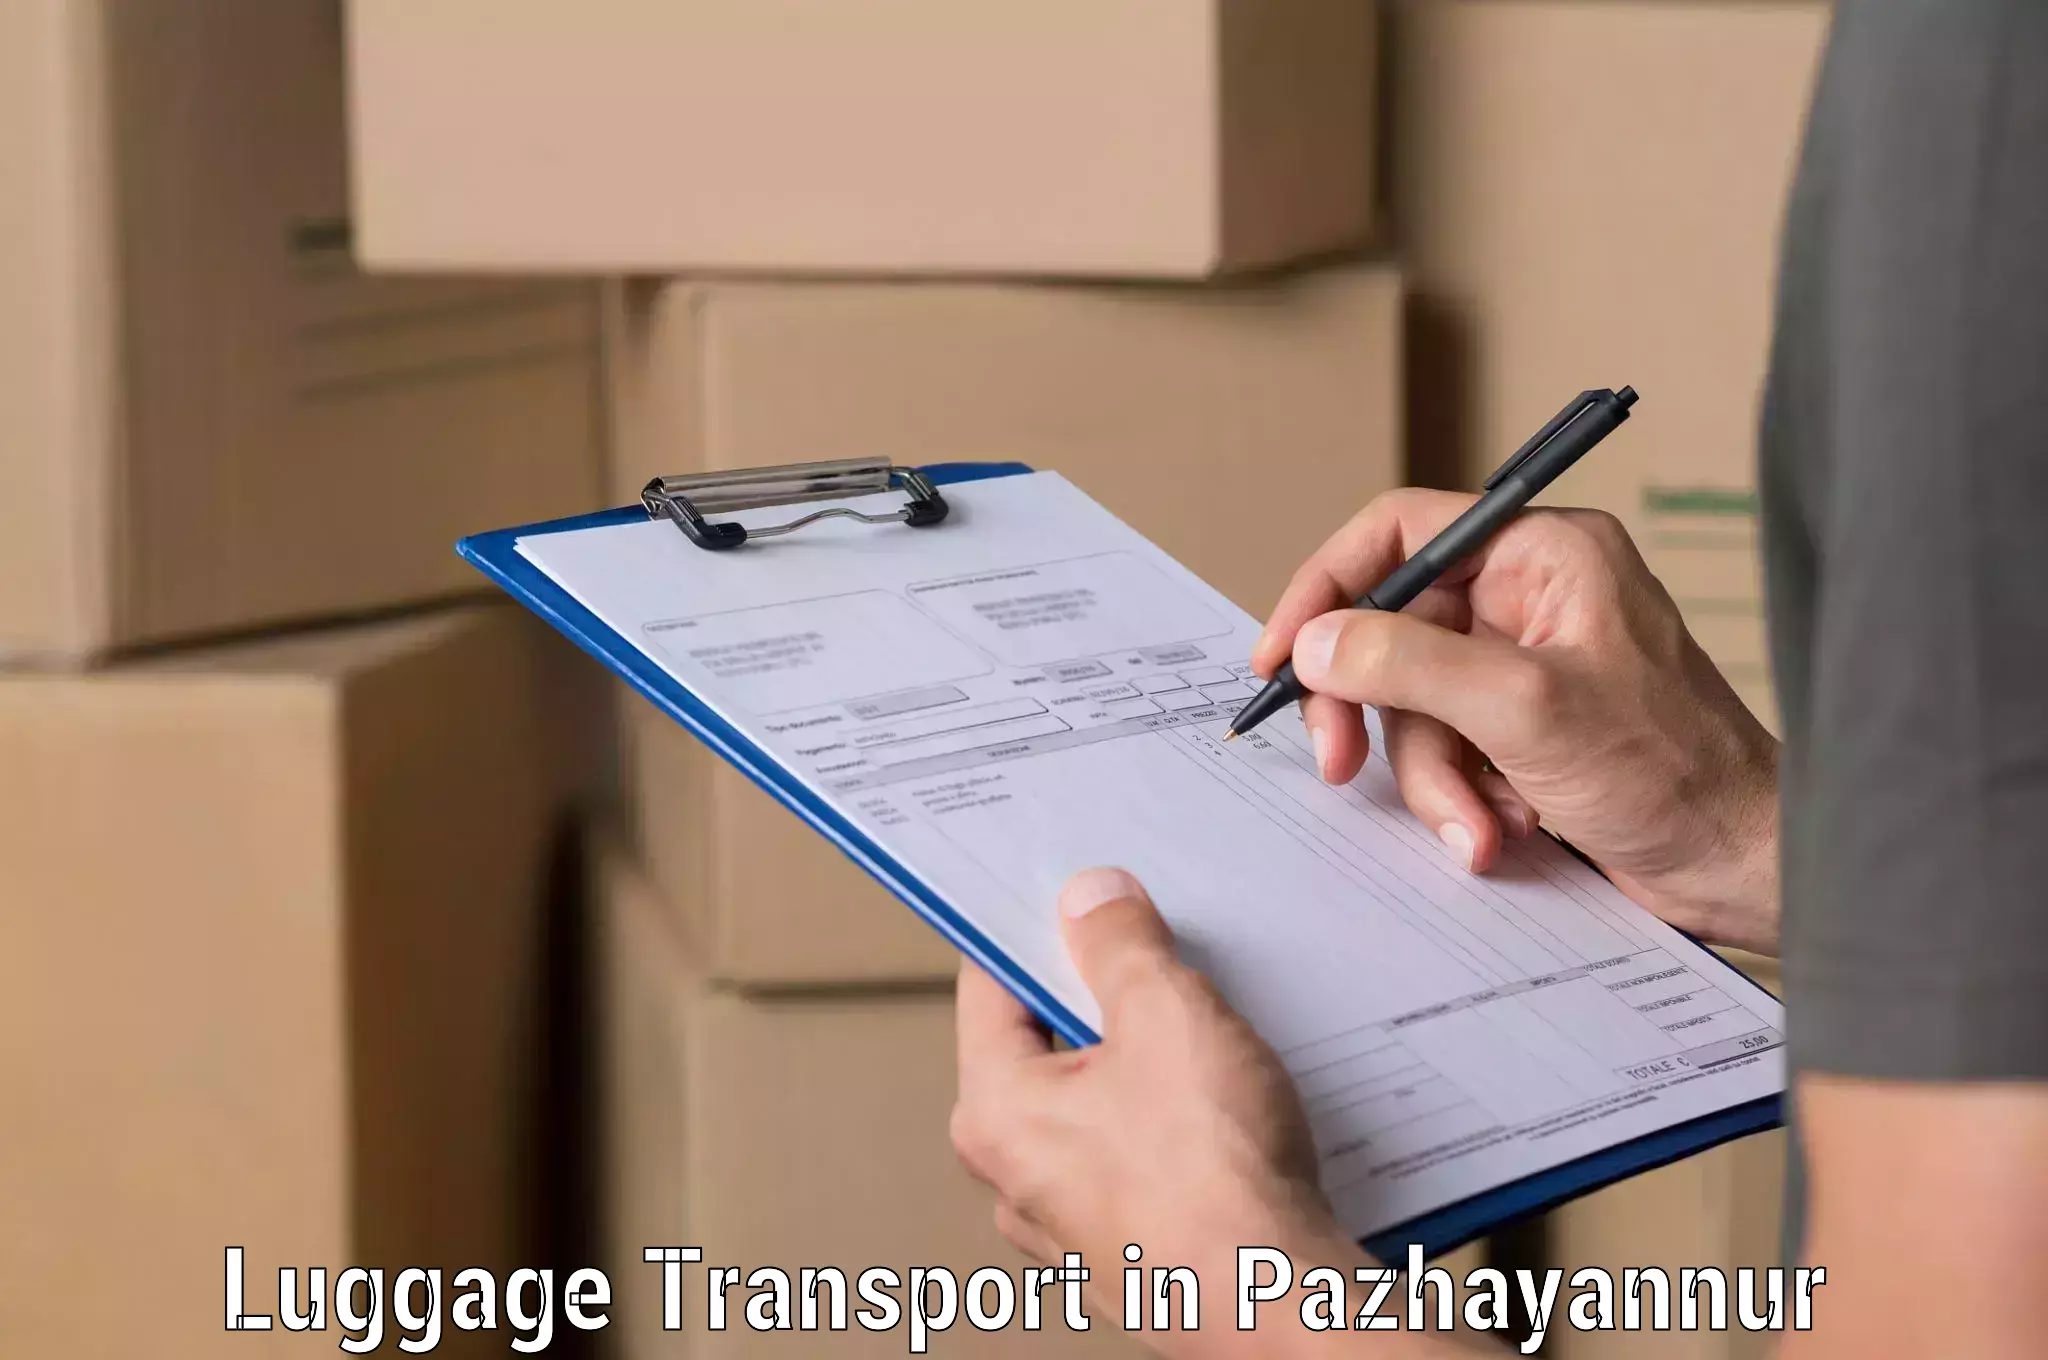 Efficient baggage transport in Pazhayannur